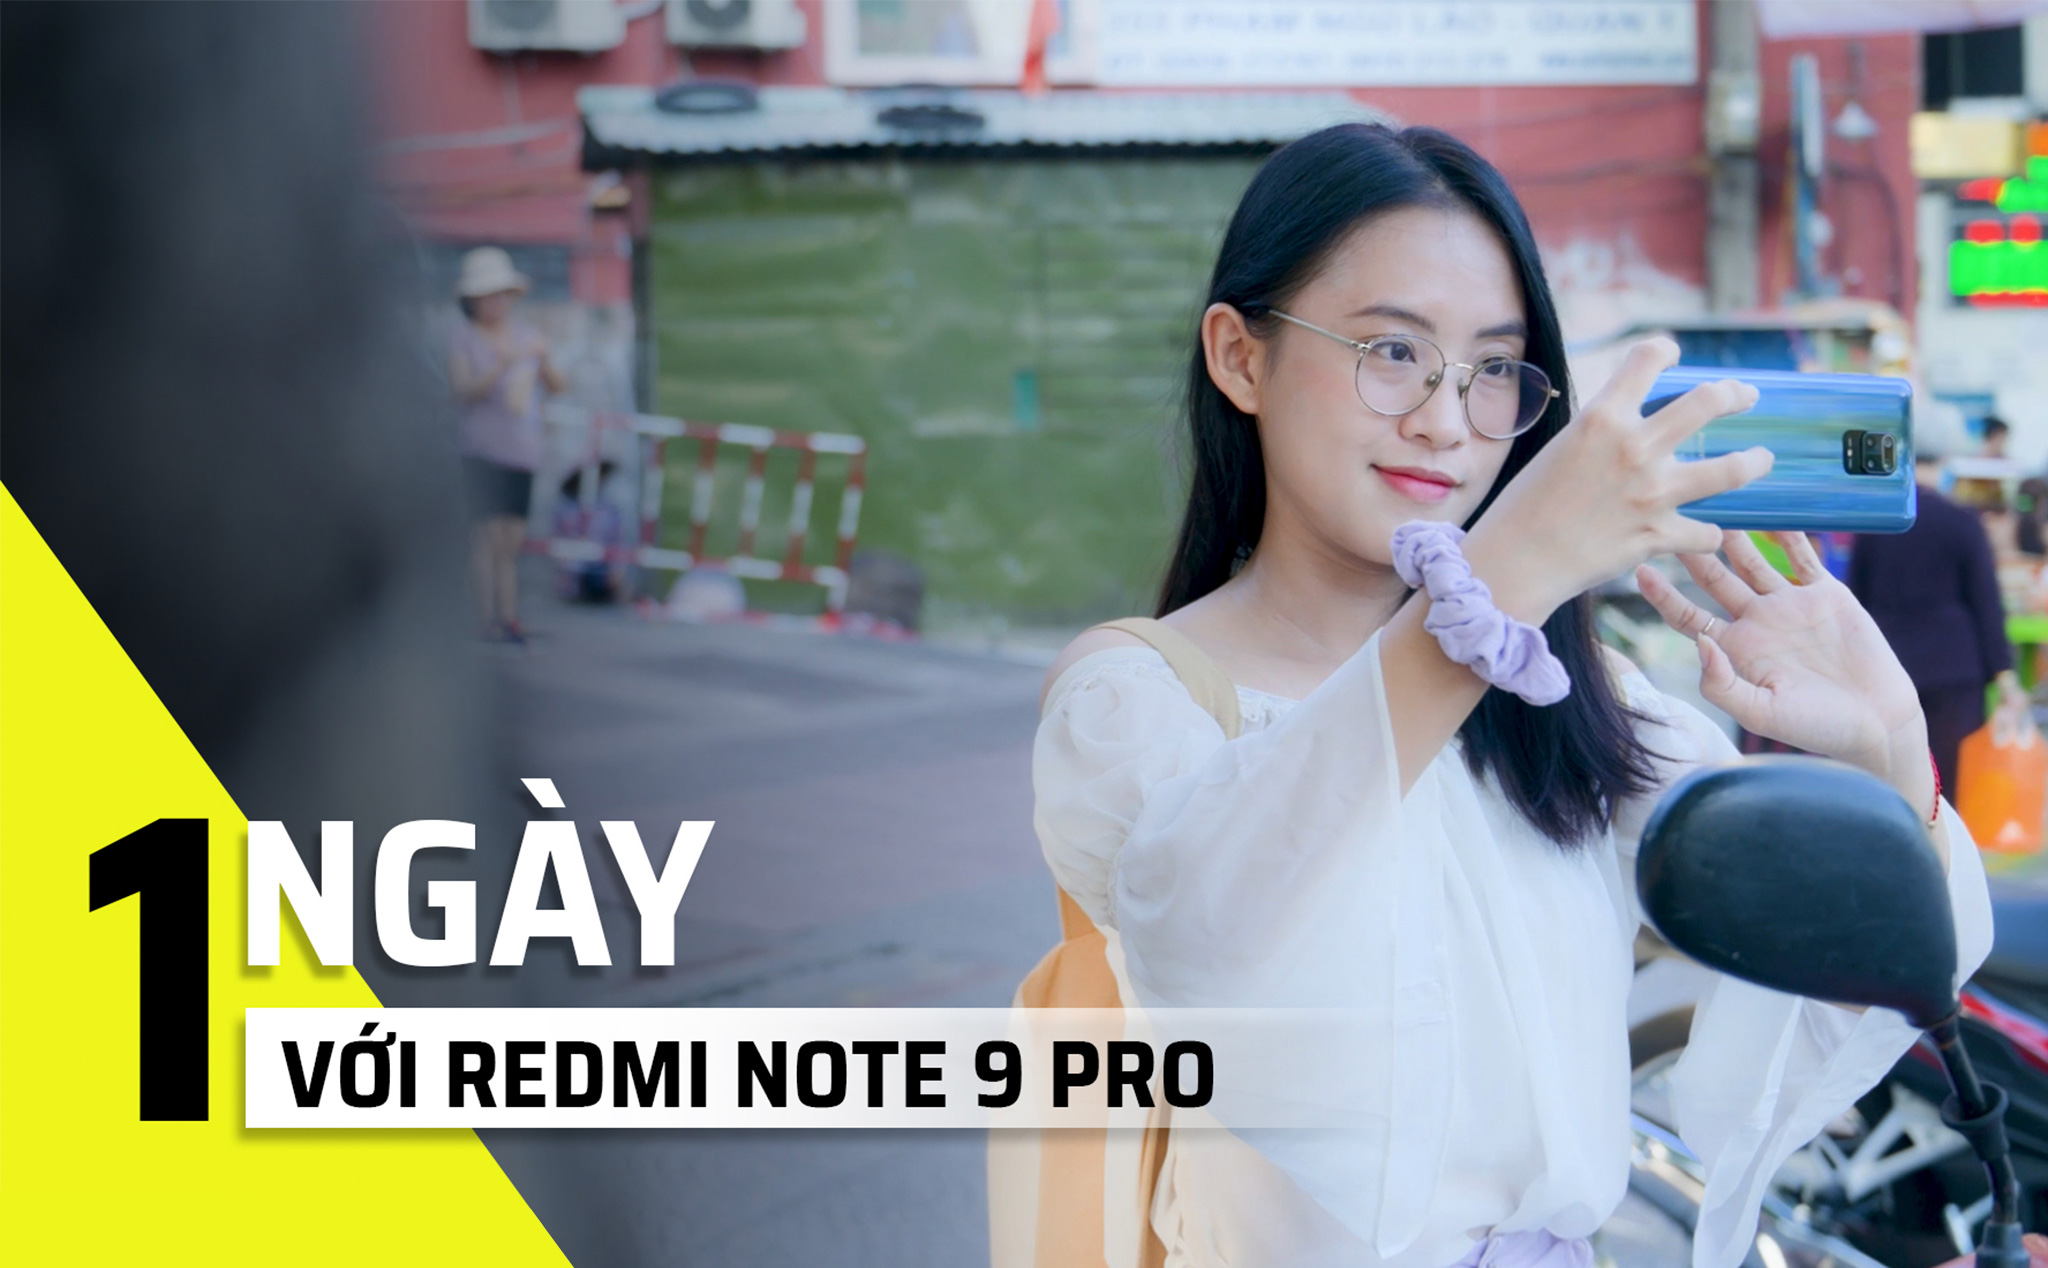 Một ngày với Redmi Note 9 Pro